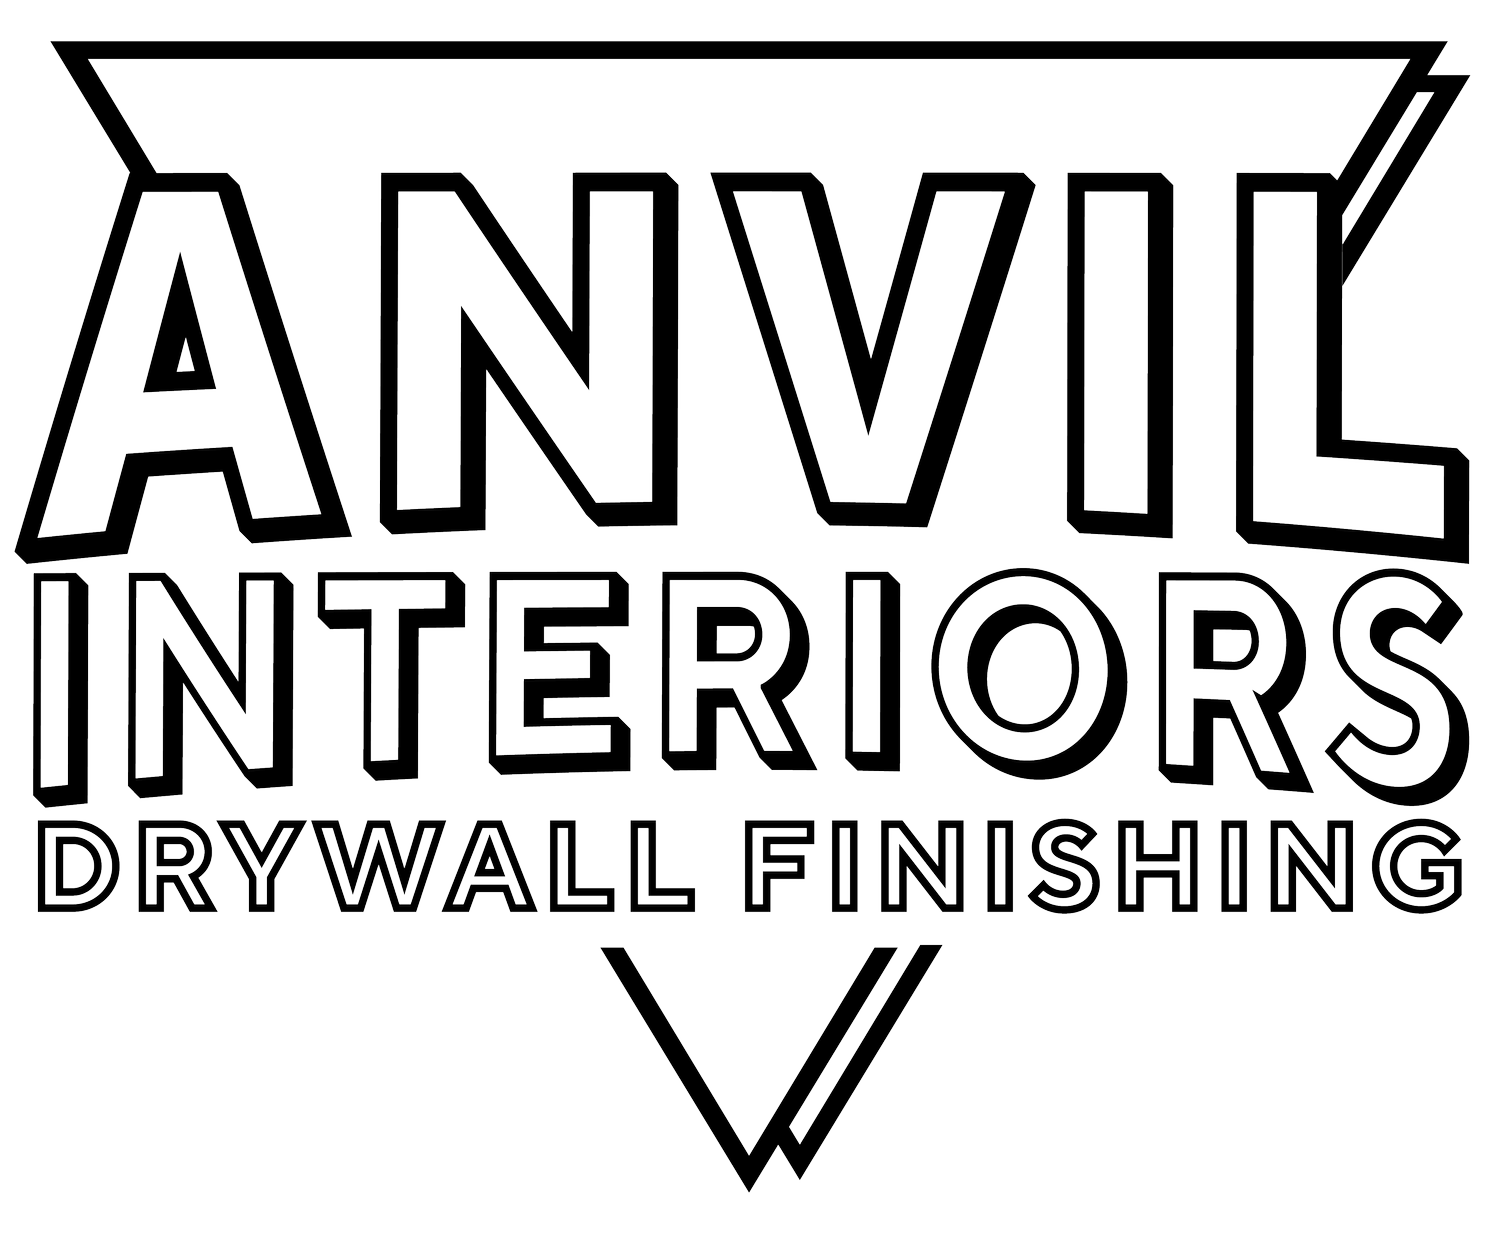 Anvil Interiors LLC